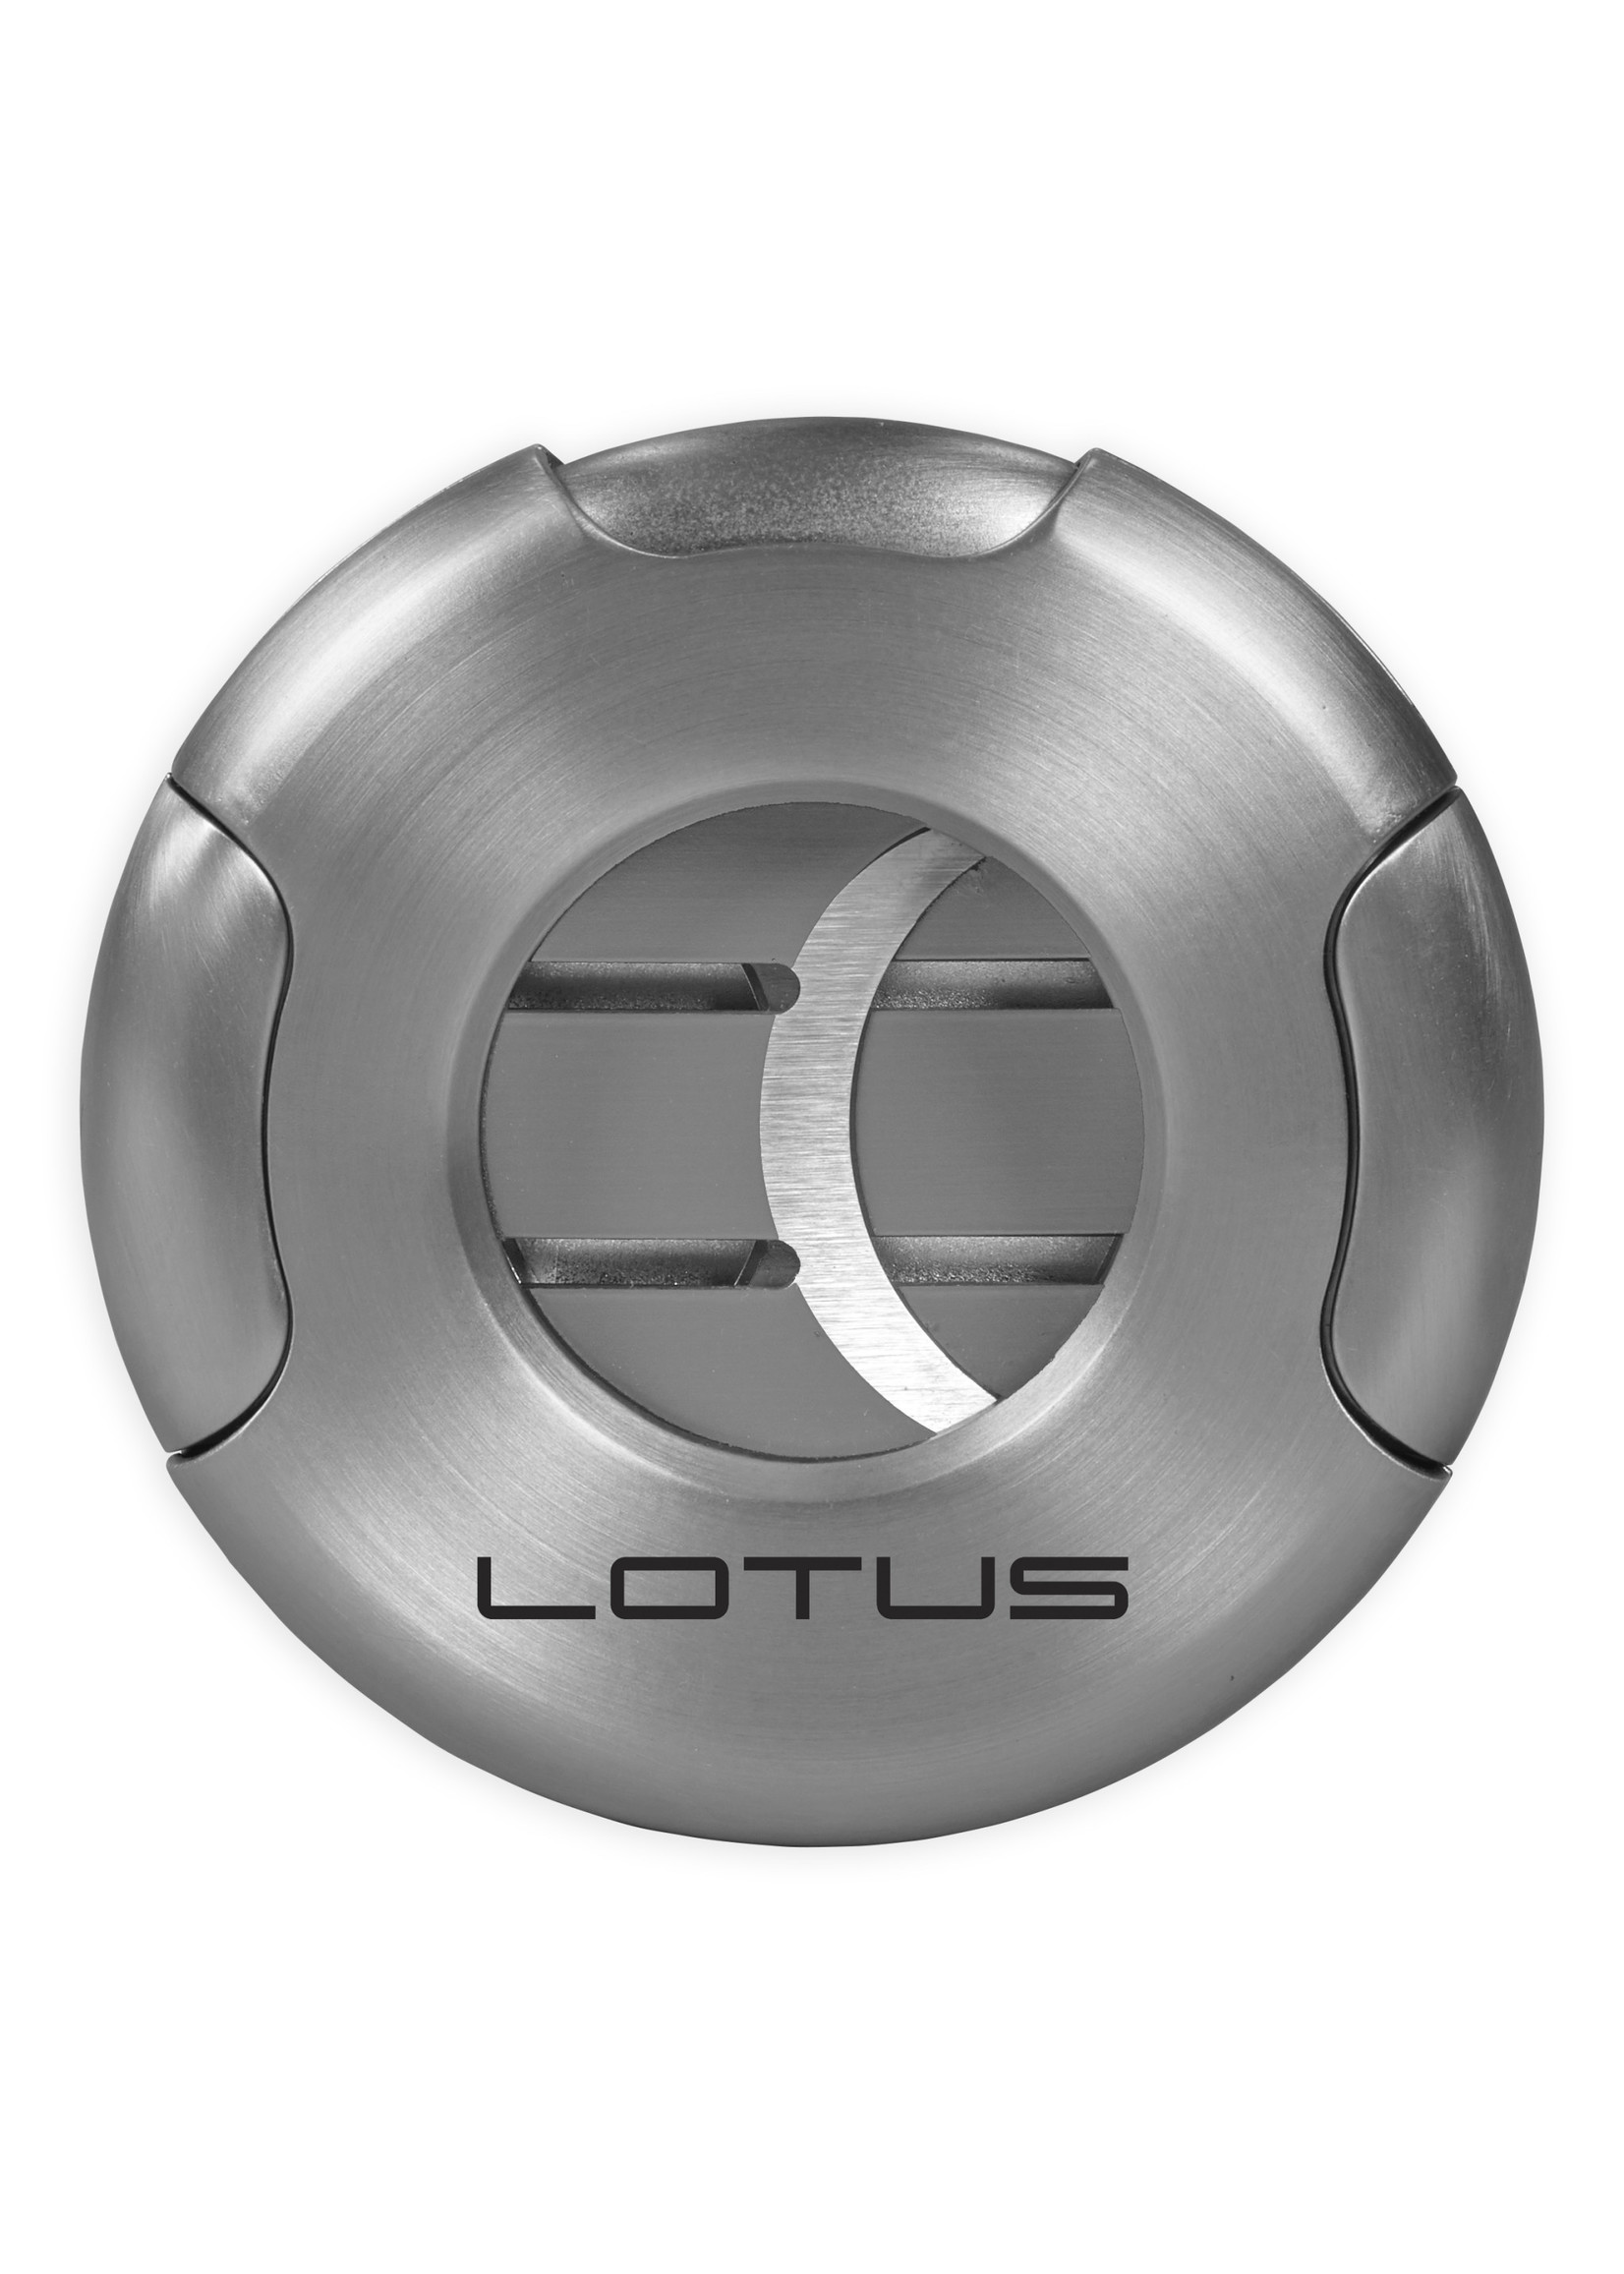 Lotus Meteor Lotus Cutter